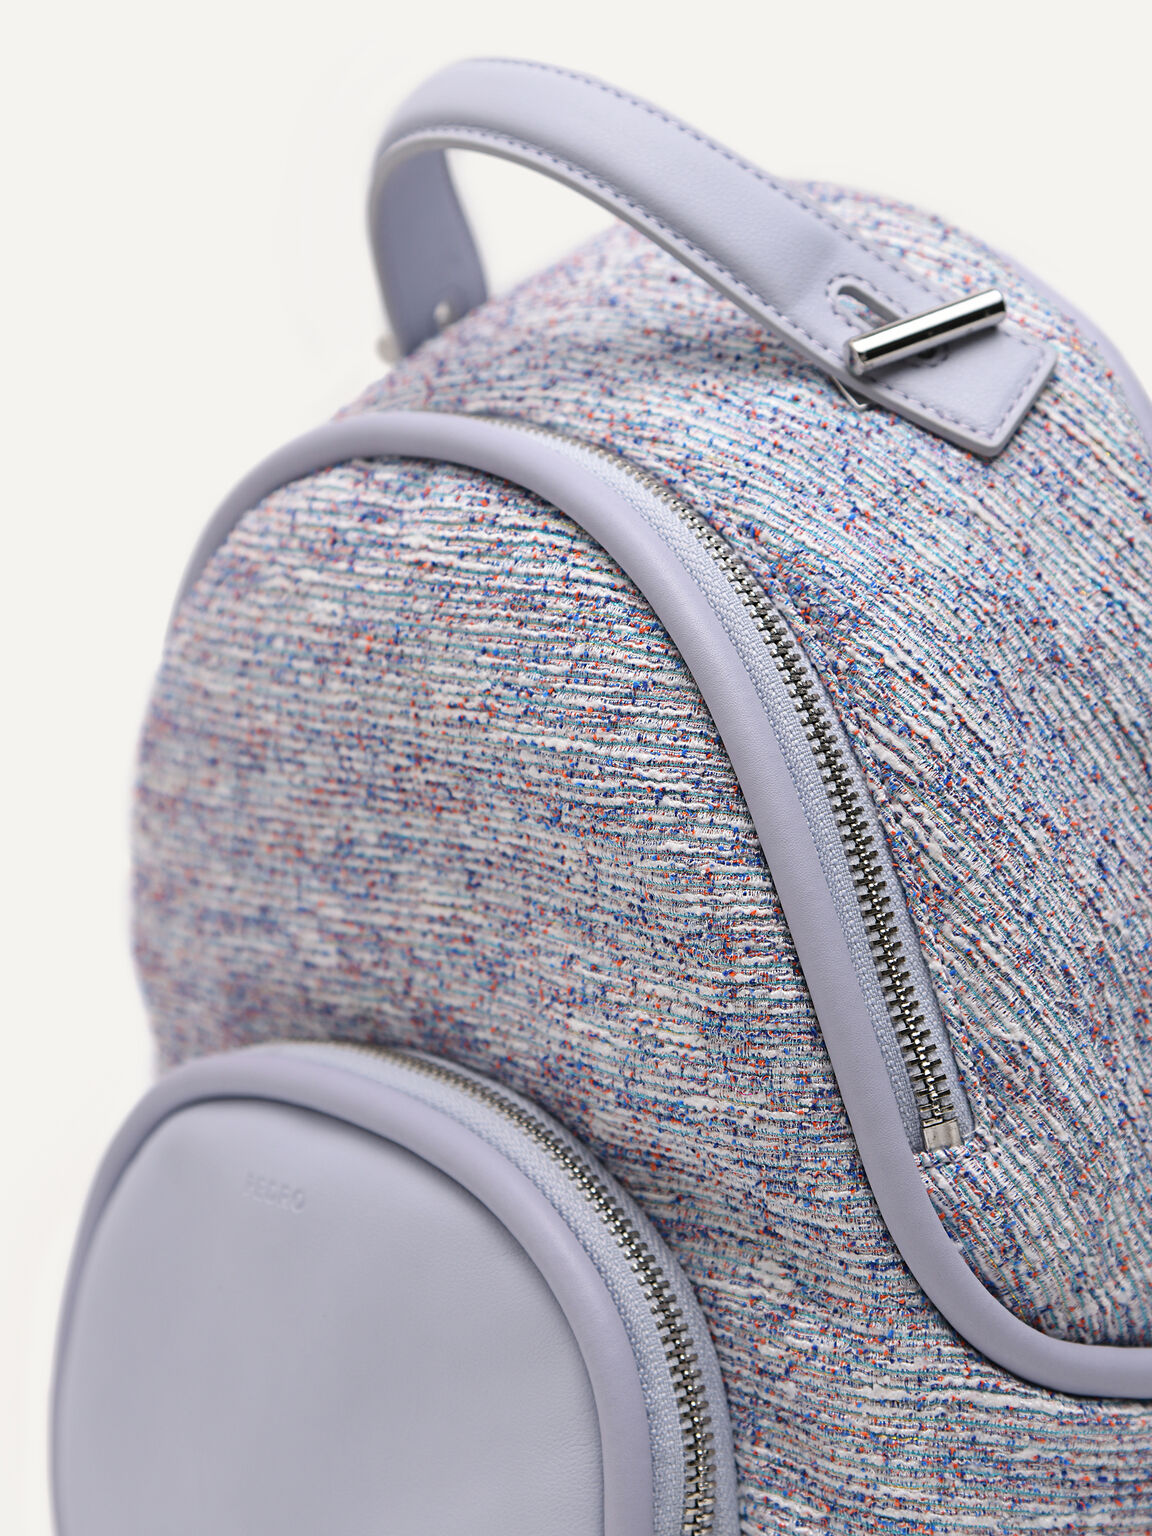 Morraine Tweed Backpack, Multi